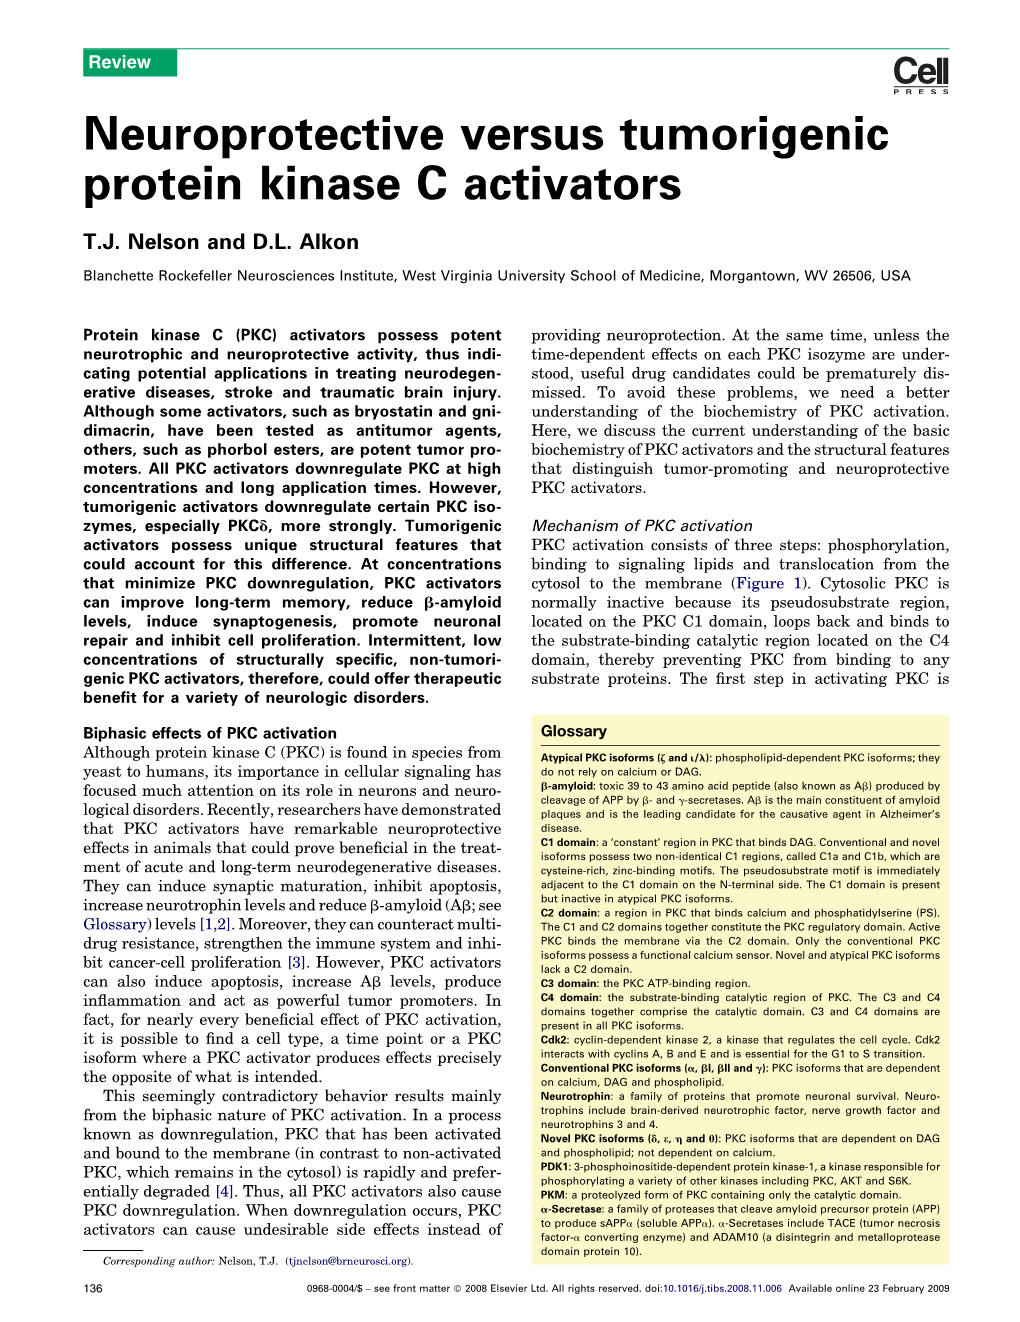 Neuroprotective Versus Tumorigenic Protein Kinase C Activators